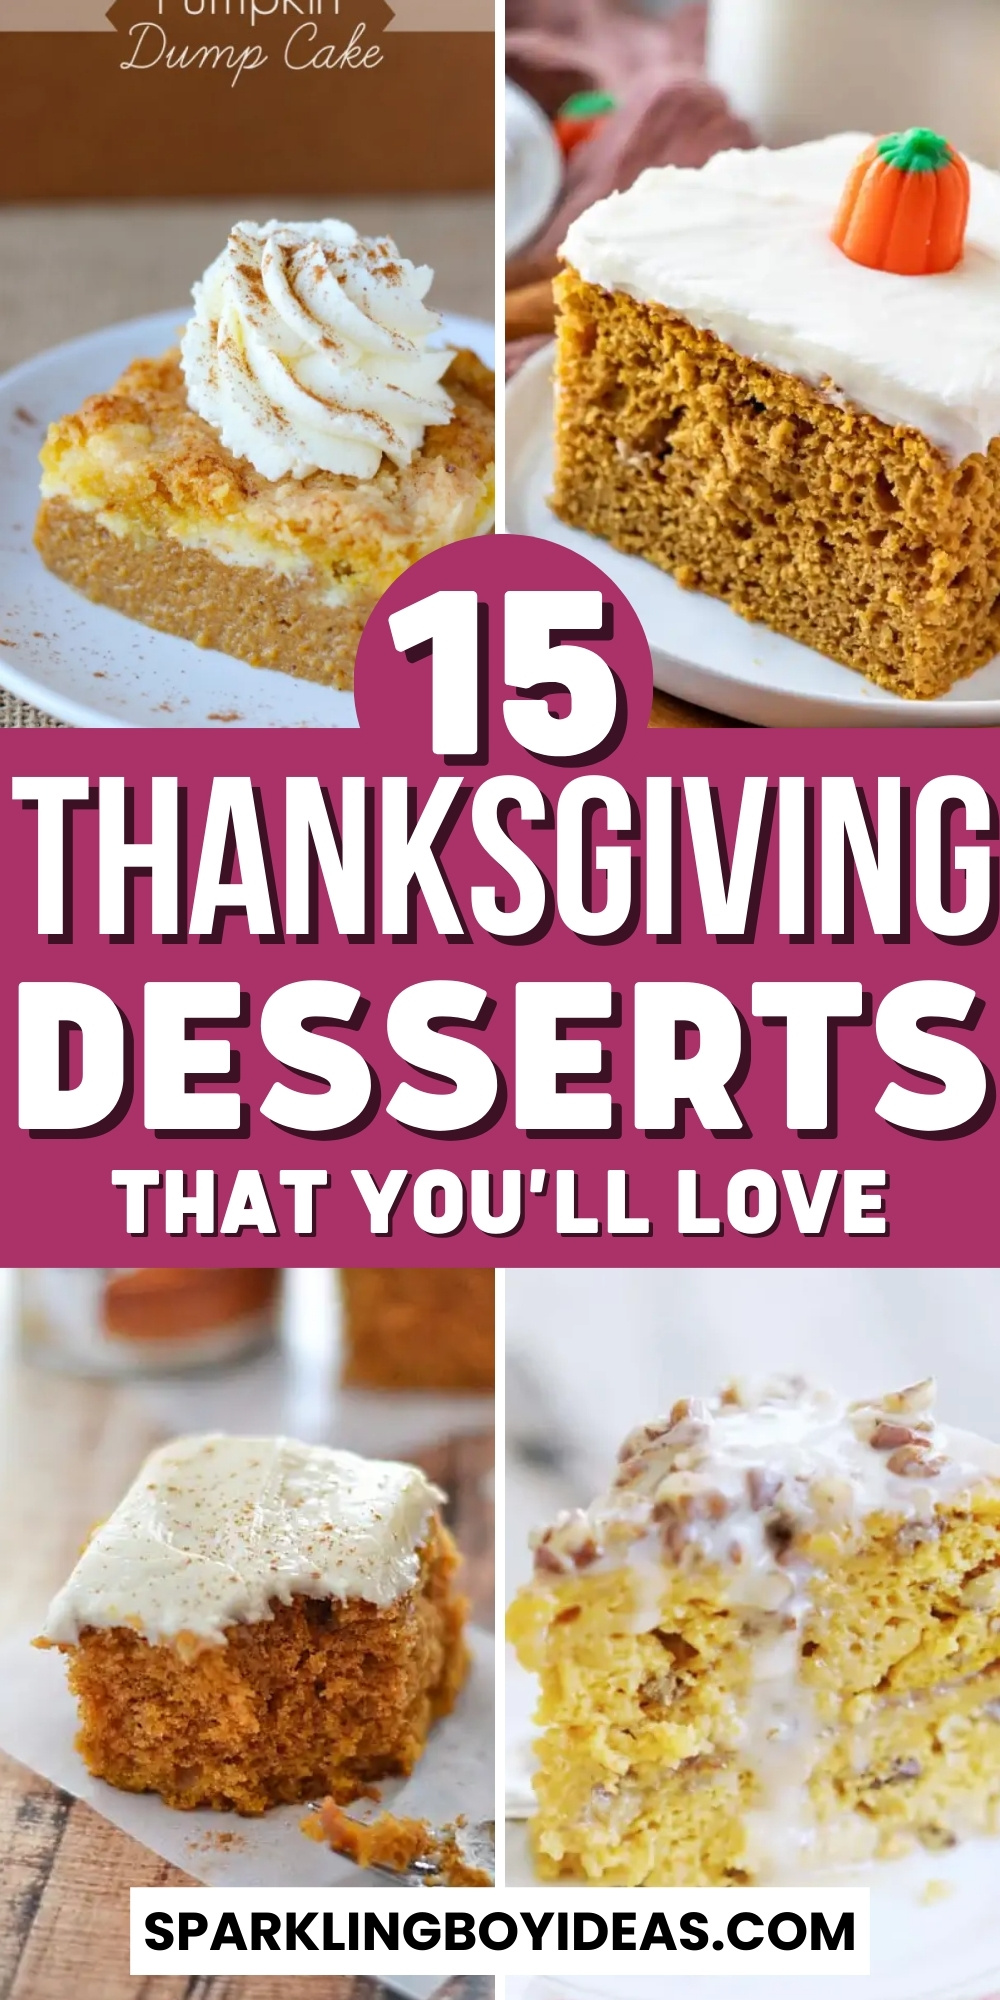 25 Best Thanksgiving Desserts - Sparkling Boy Ideas